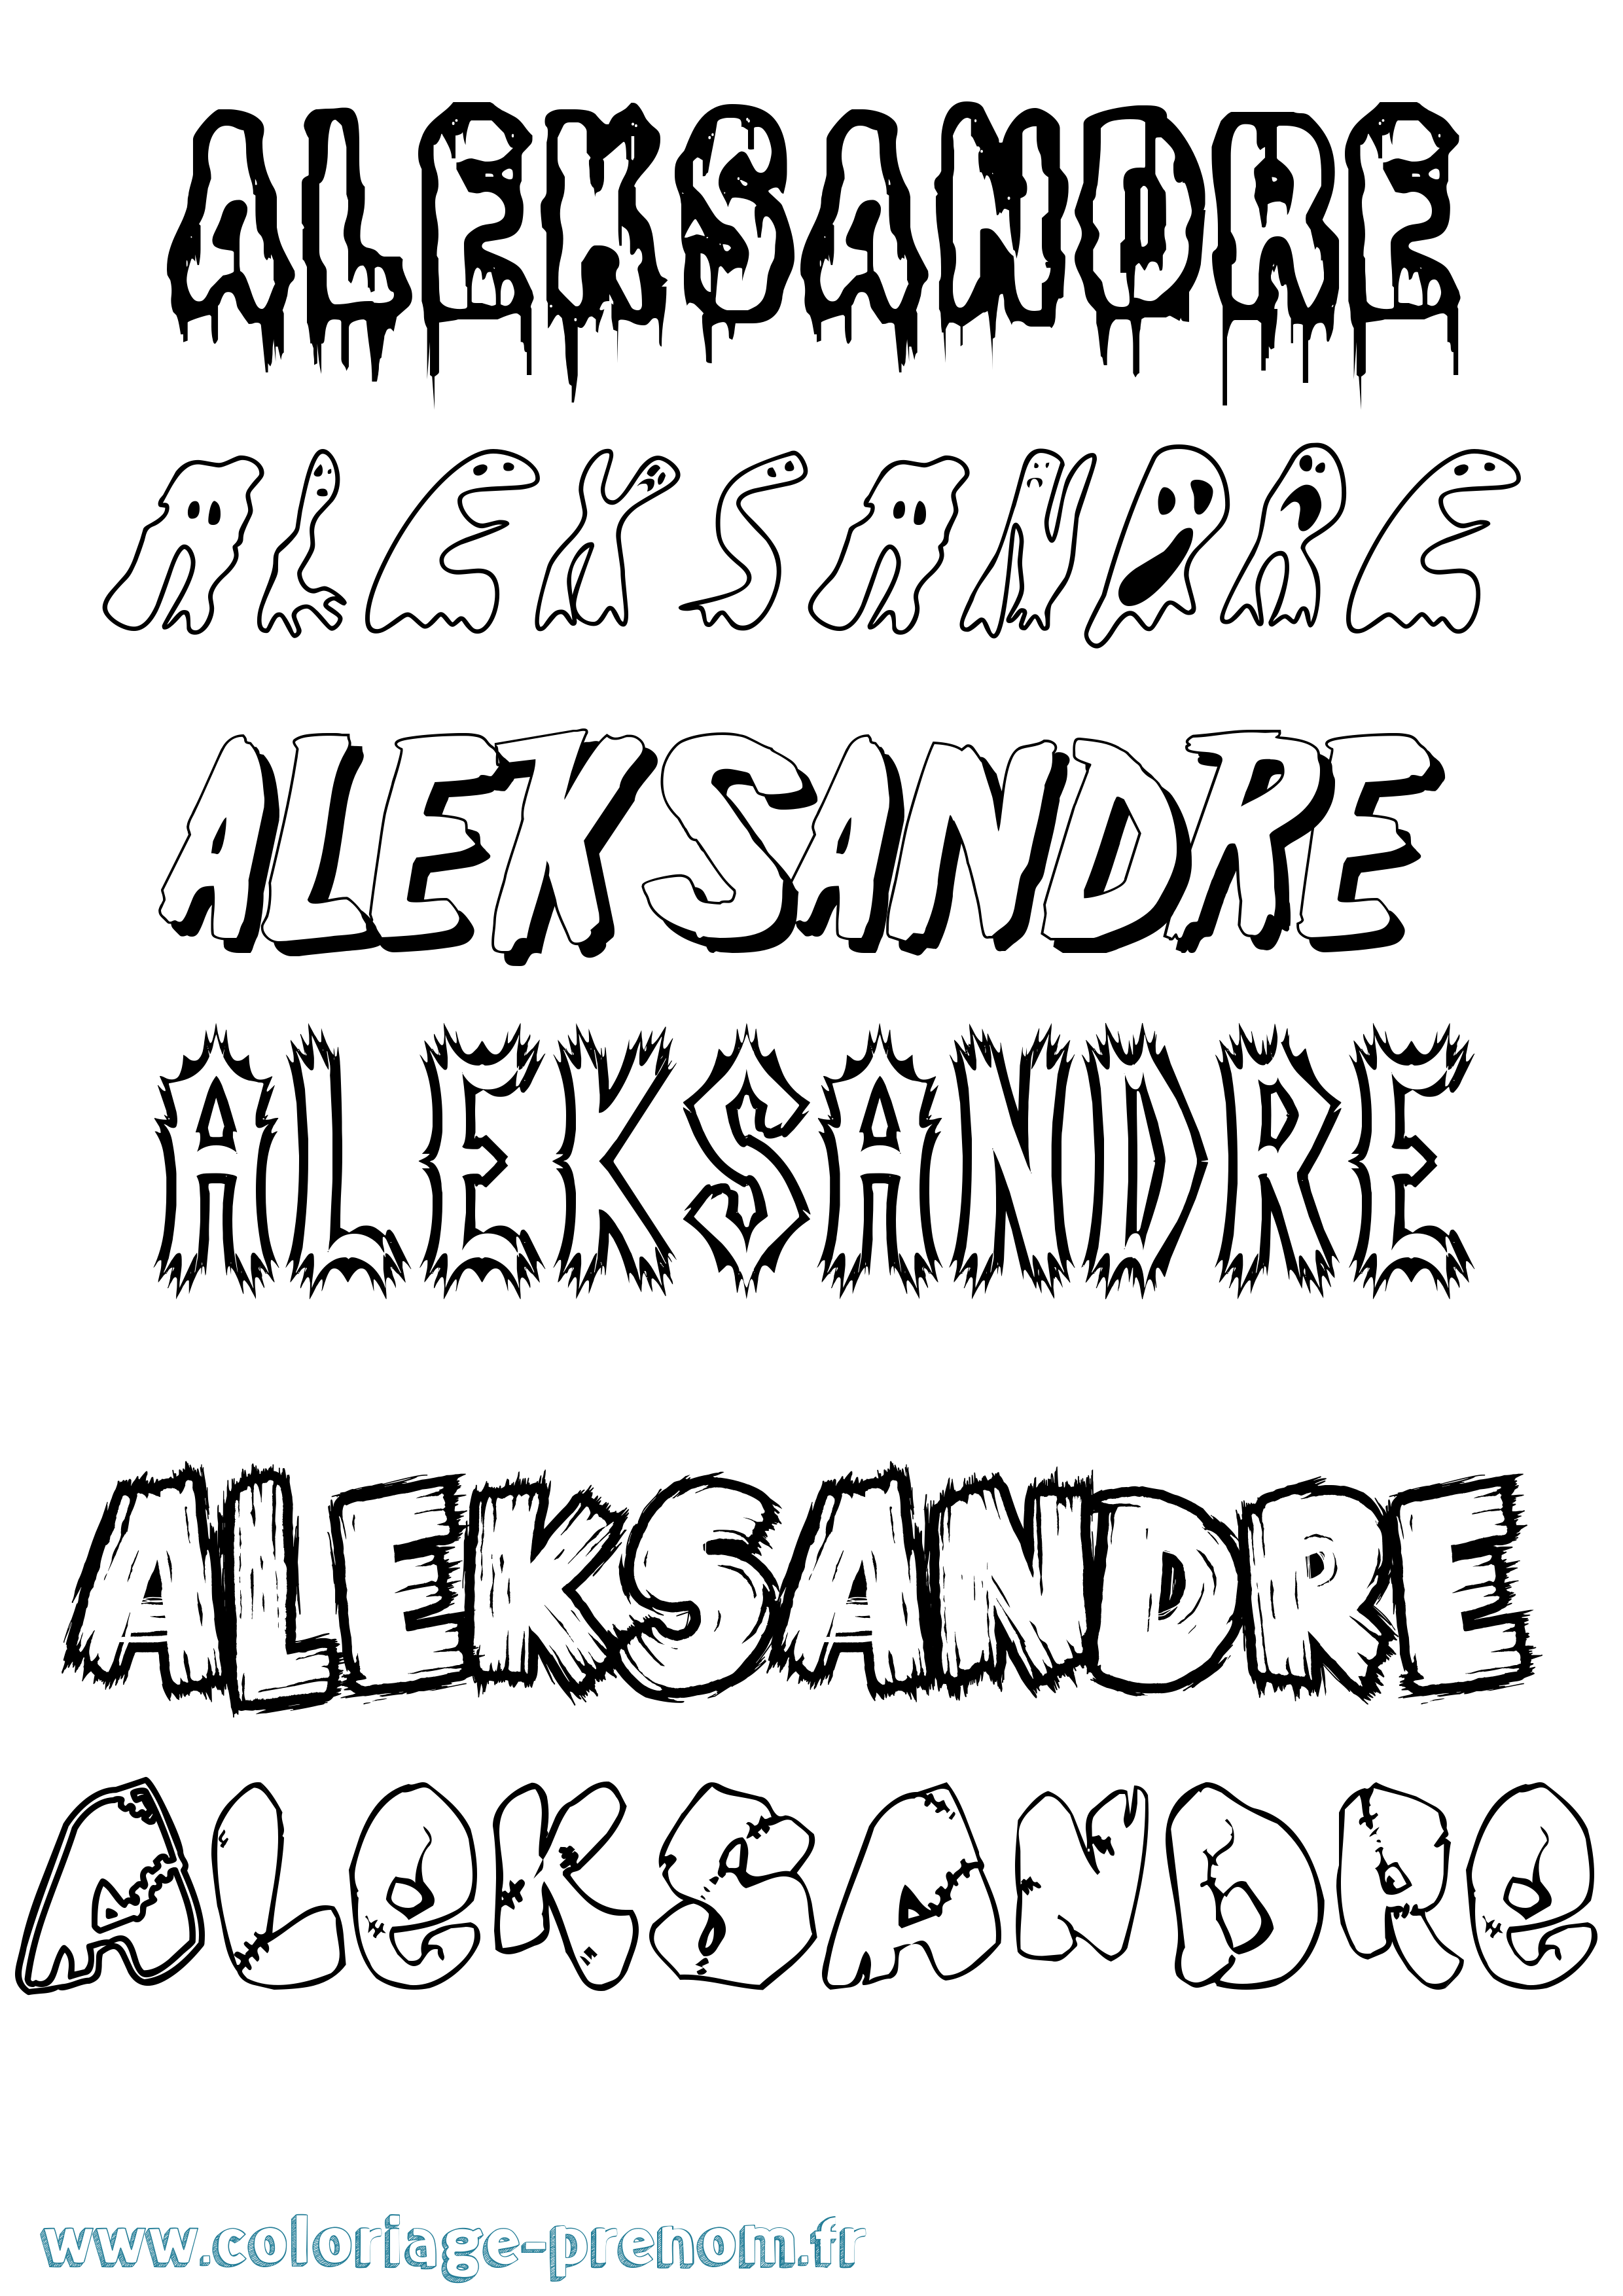 Coloriage prénom Aleksandre Frisson